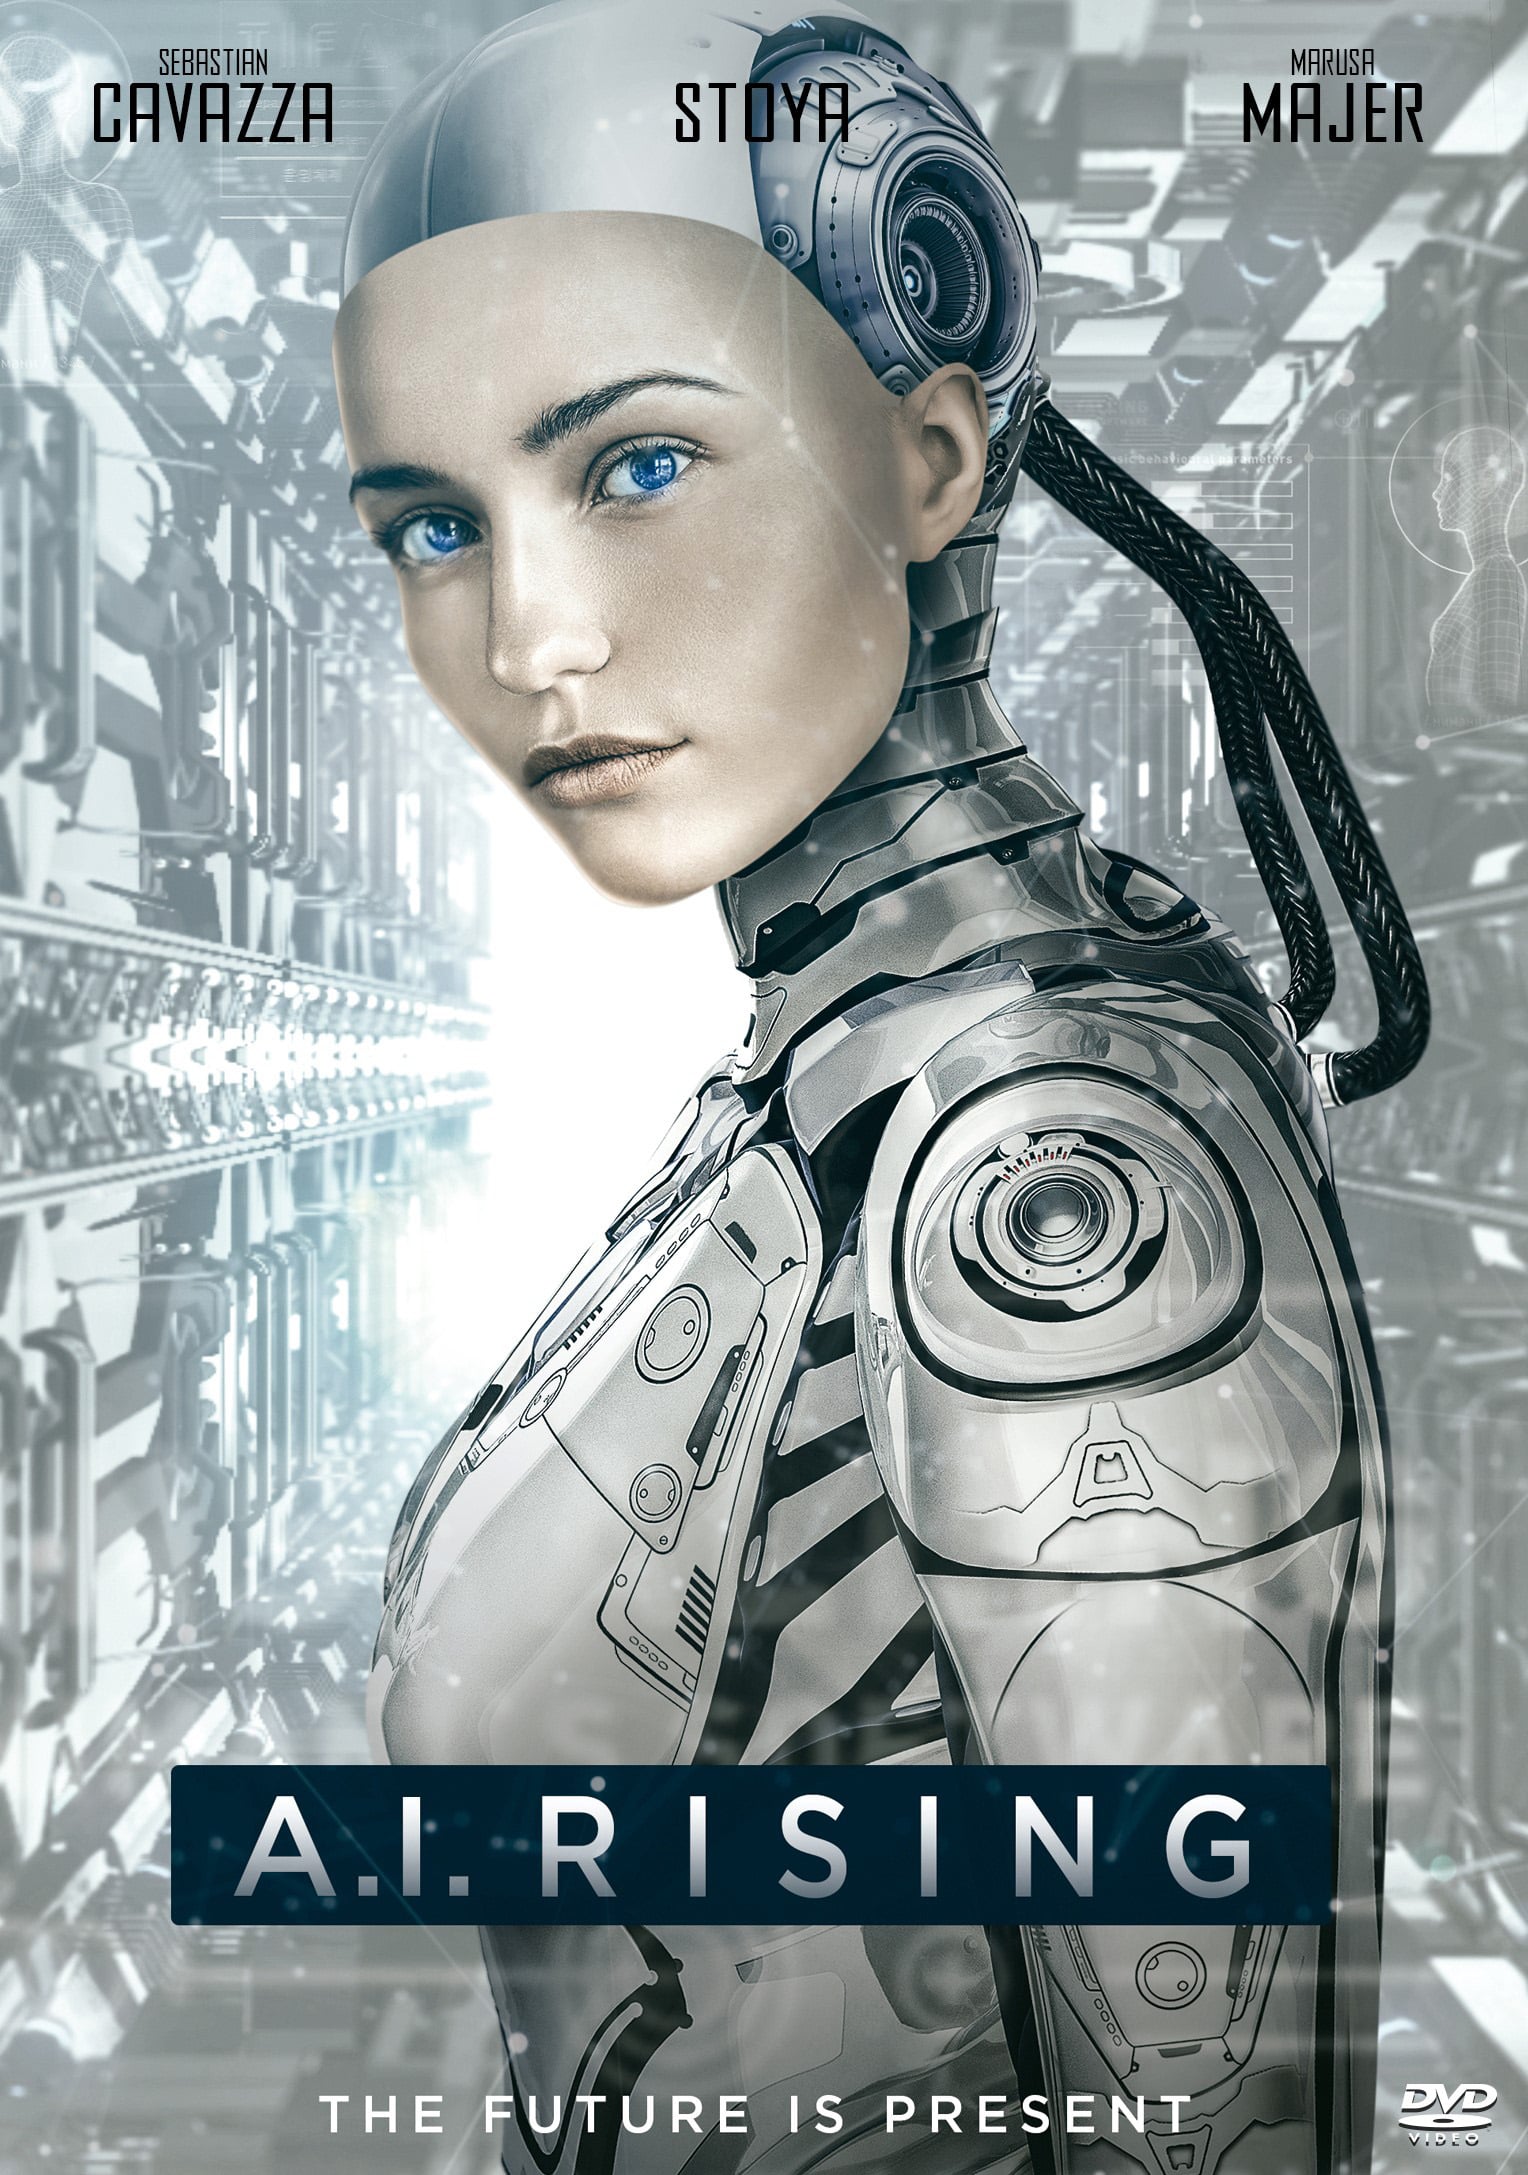 1528px x 2175px - A.I. Rising (2018) - Moria